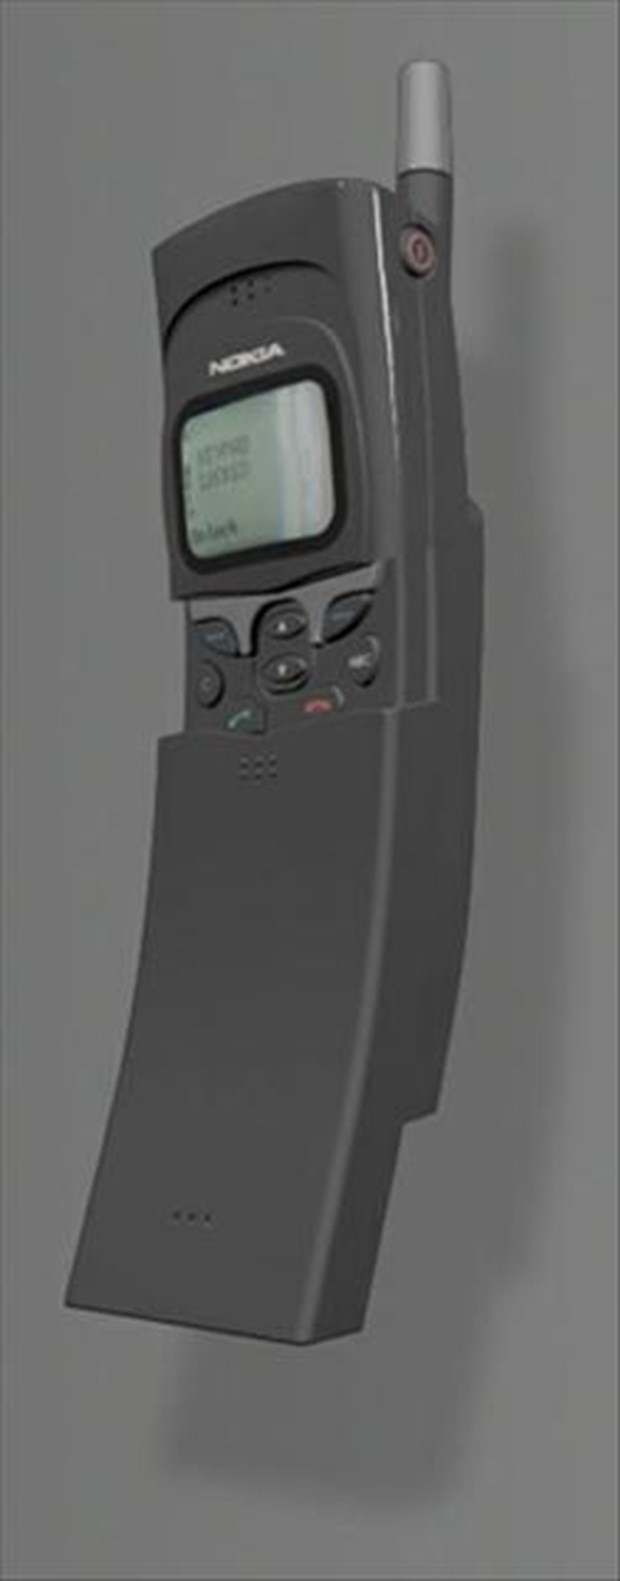 Nokia 8810 – 1996